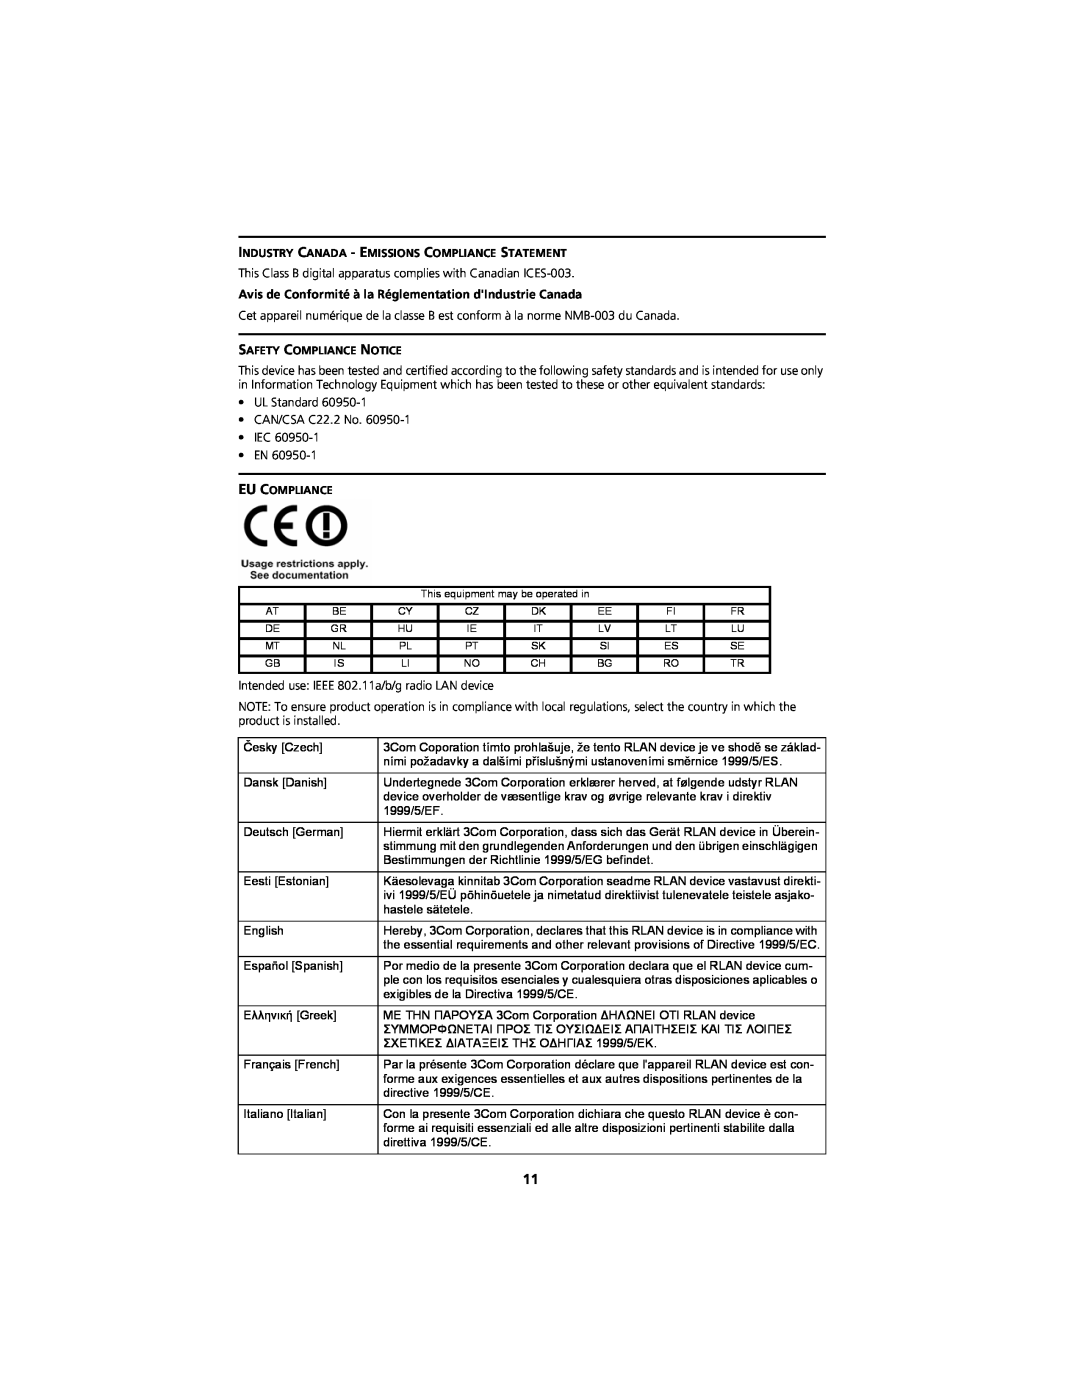 3Com WL-548A manual Avis de Conformité à la Réglementation dIndustrie Canada 